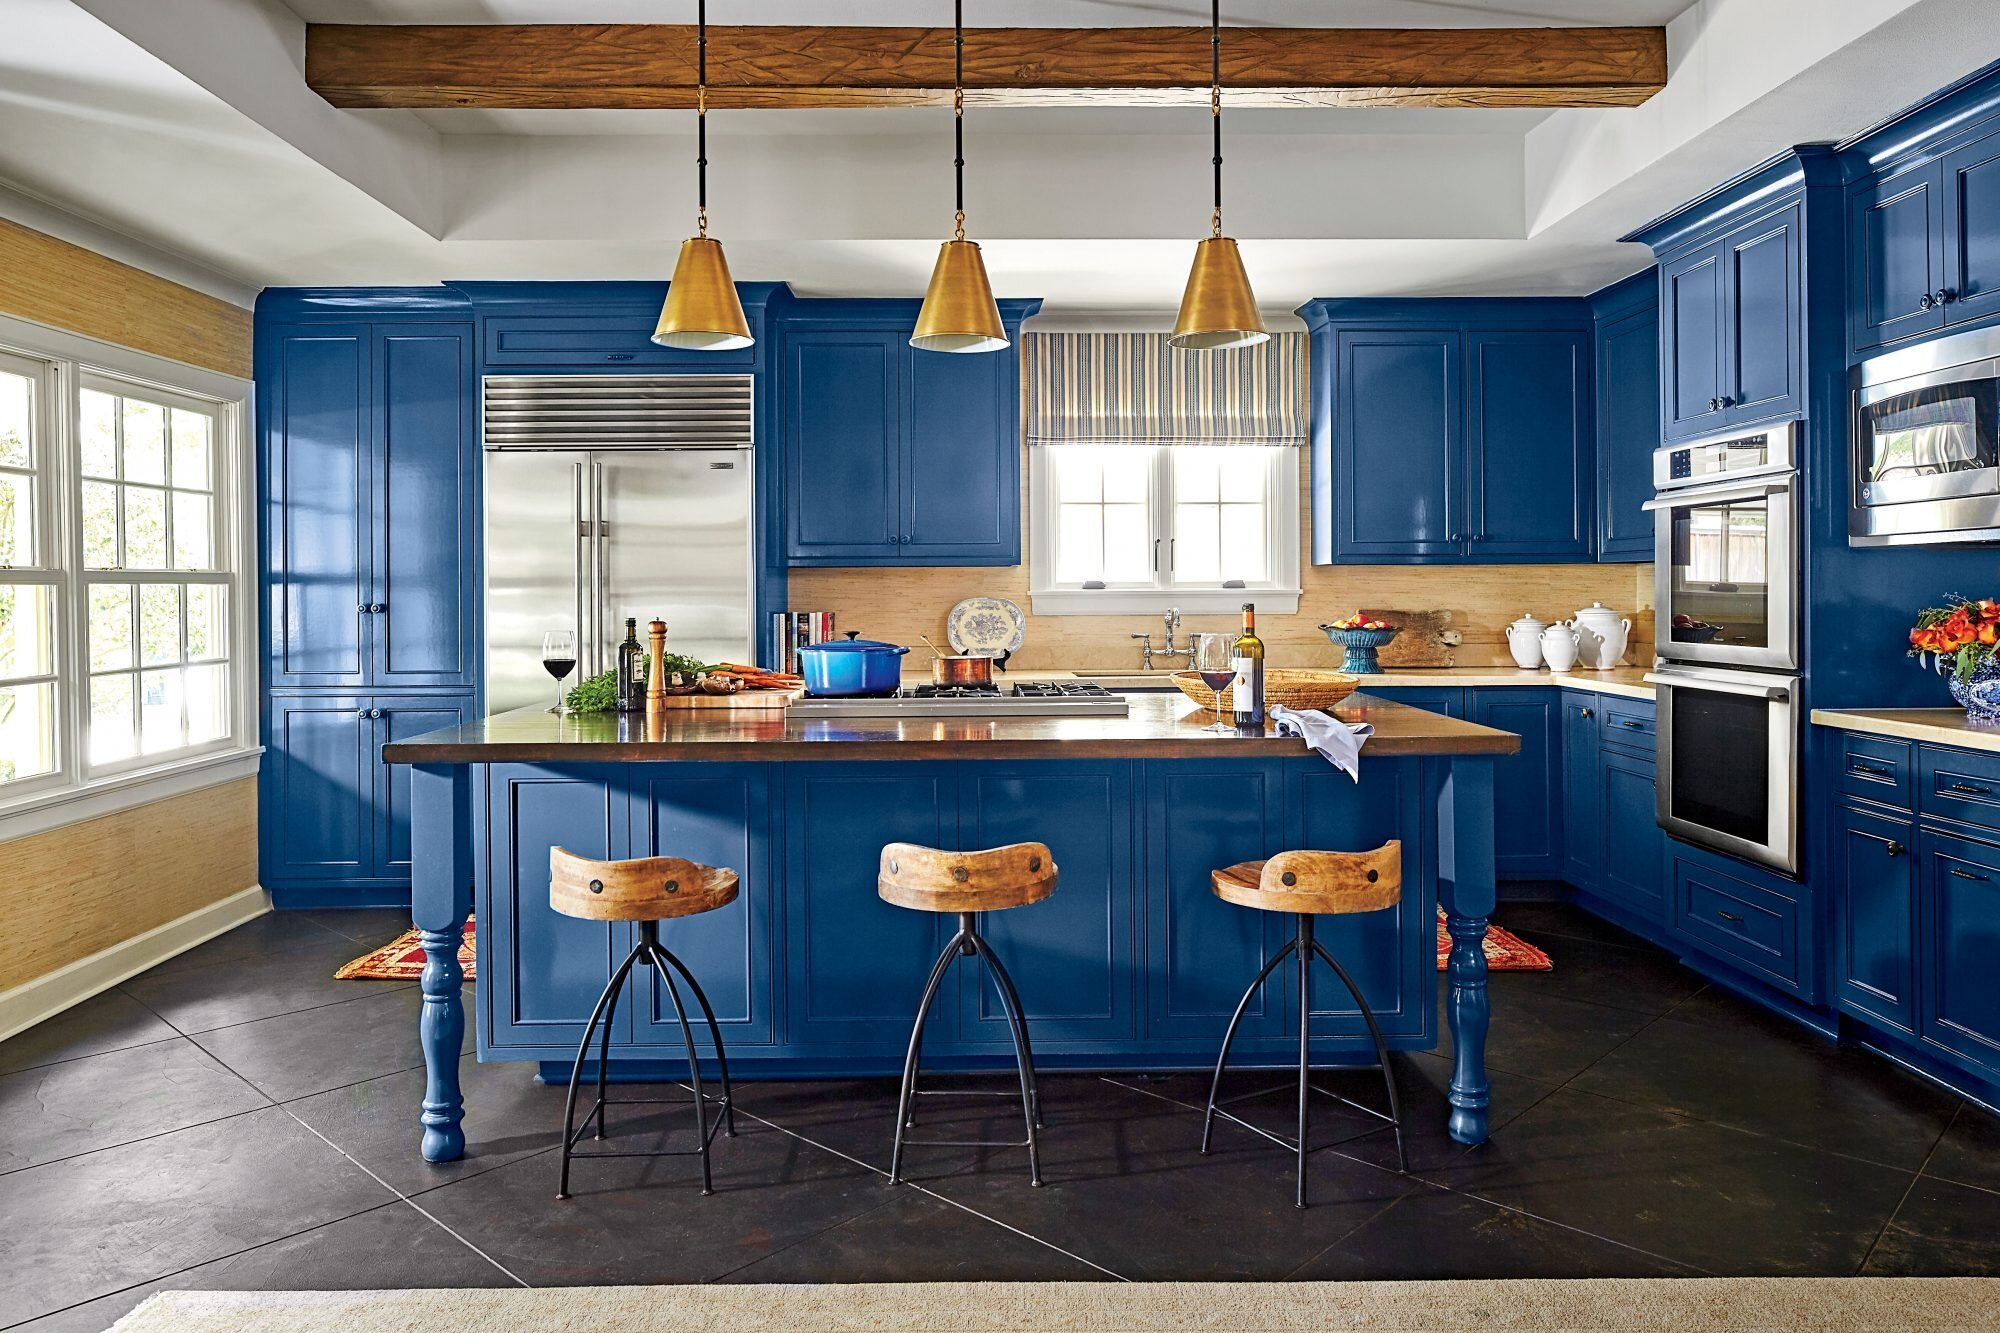 Синяя кухня: как оформить кухню в синих тонах - smallinterior
синяя кухня: как оформить кухню в синих тонах - smallinterior